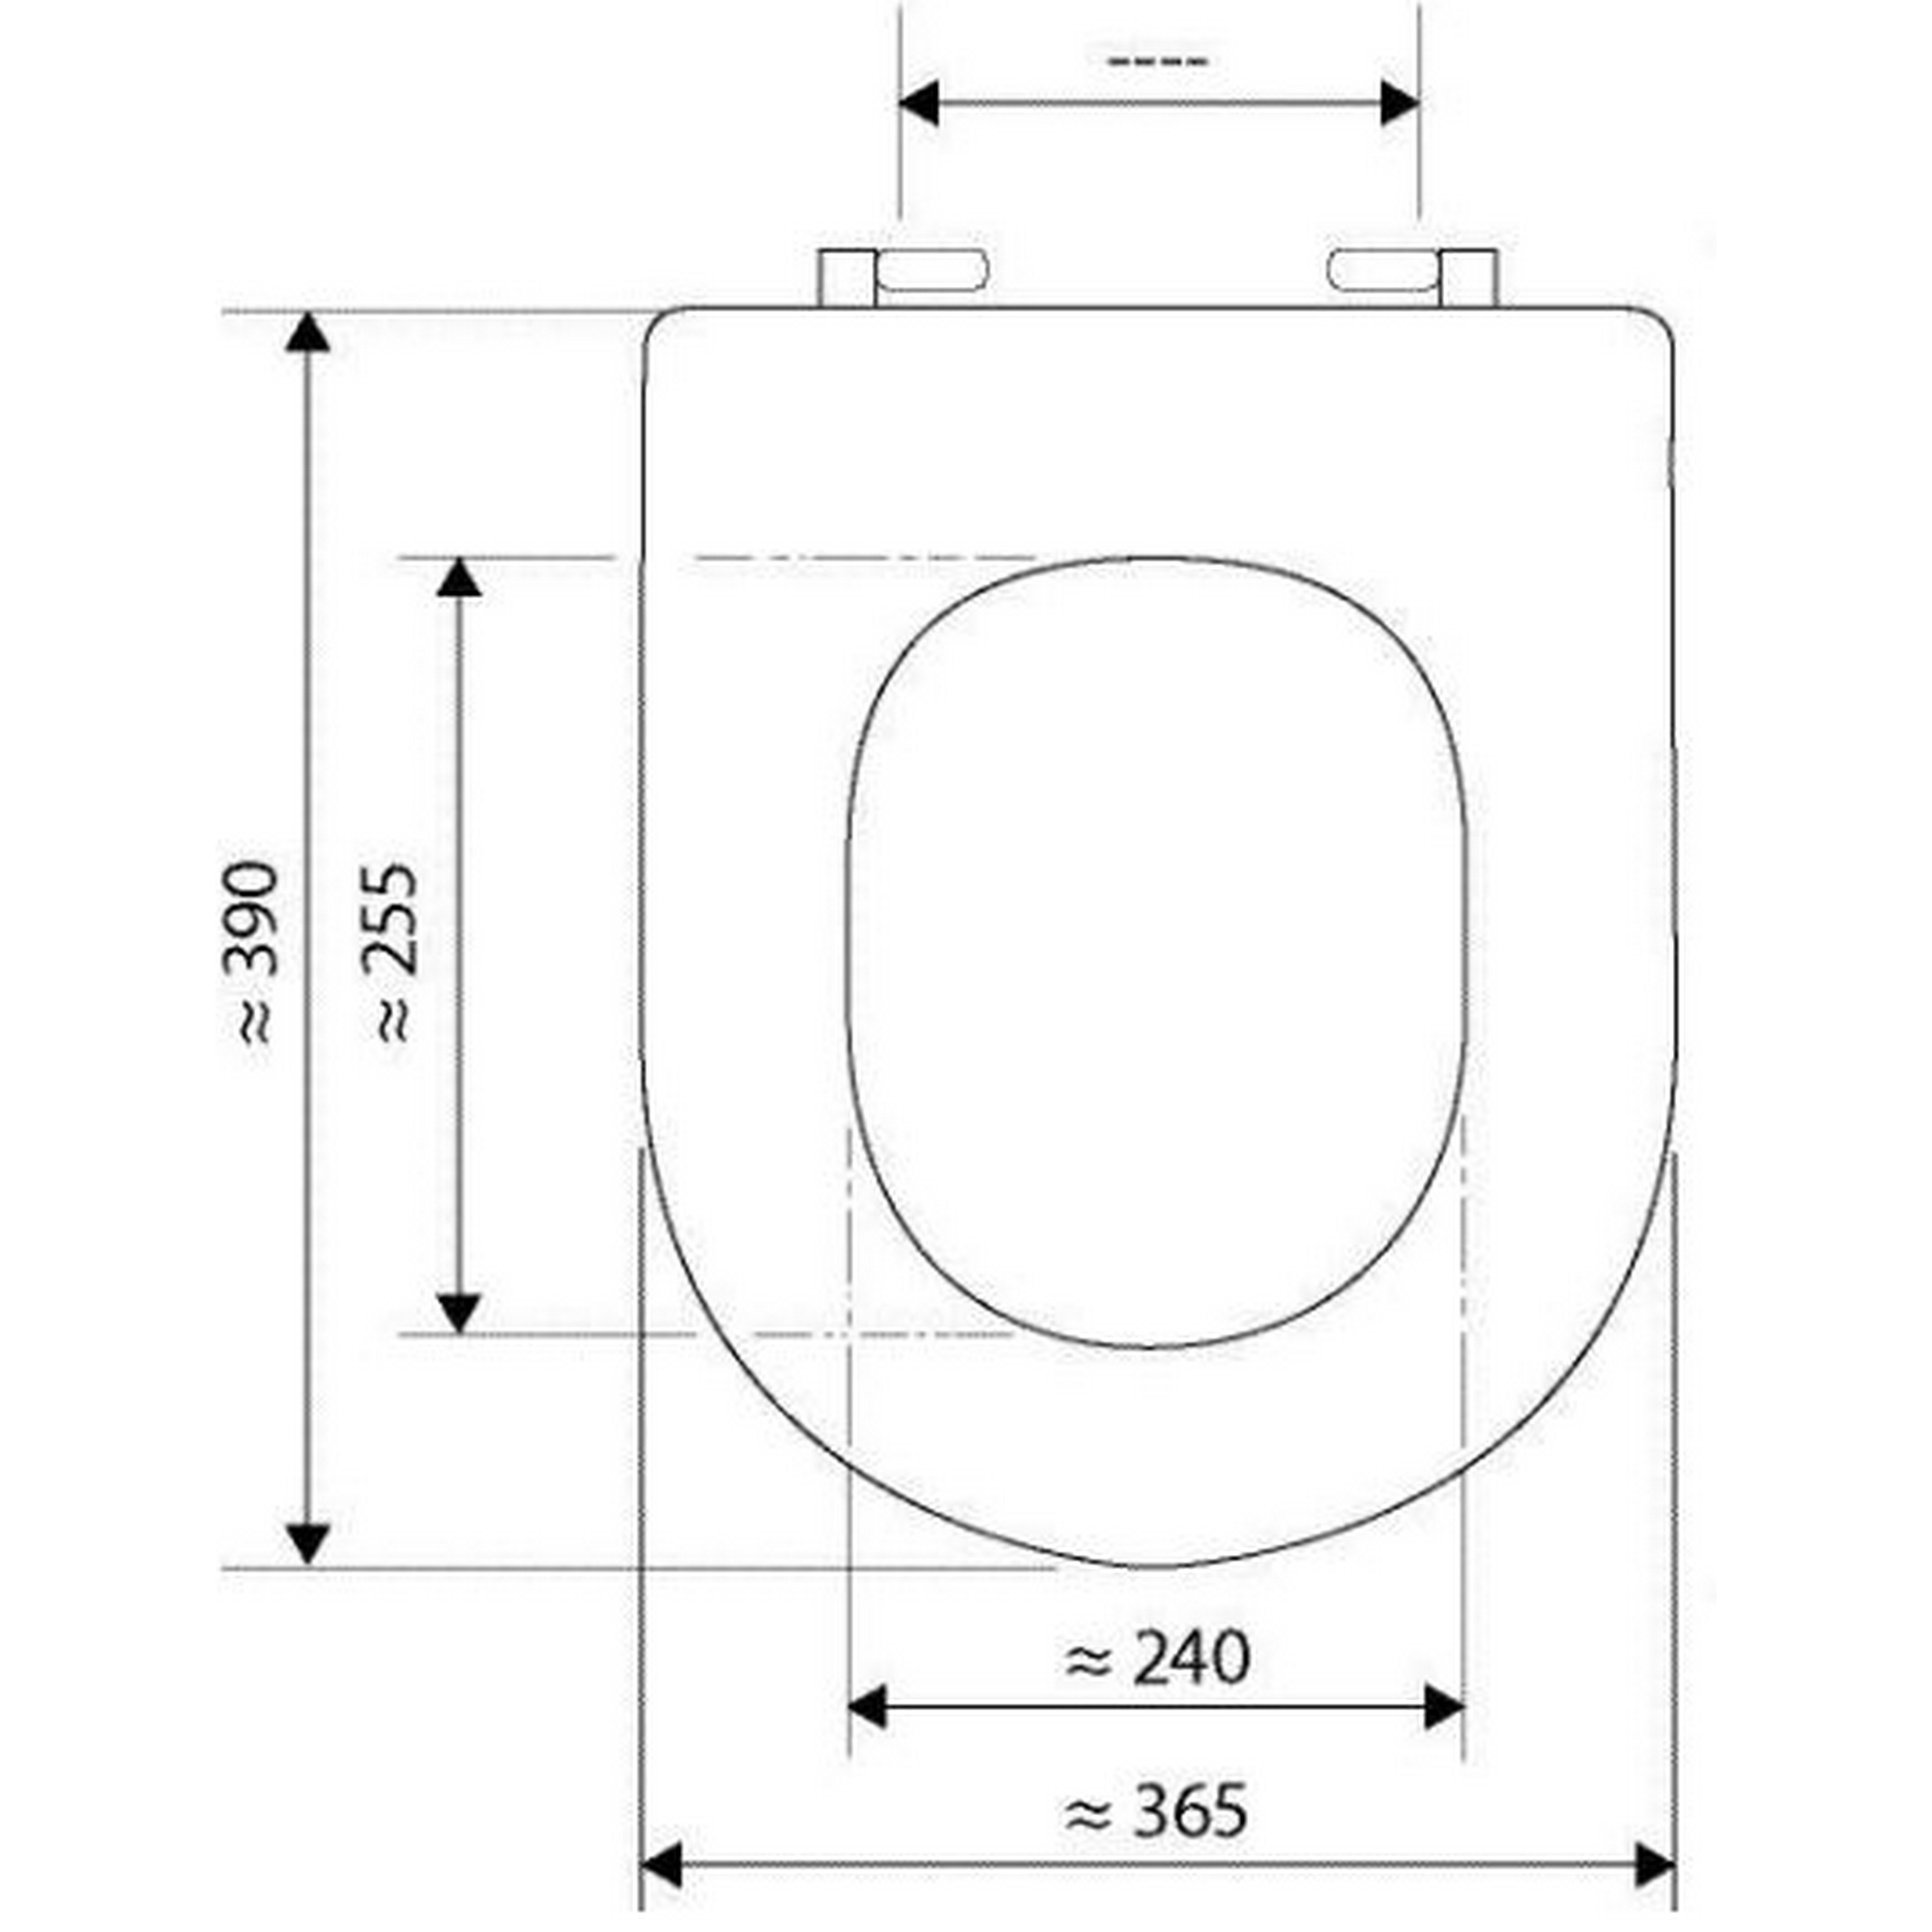 WC-Sitz 'Reflex' weiß Duroplast, mit Absenkautomatik + product picture